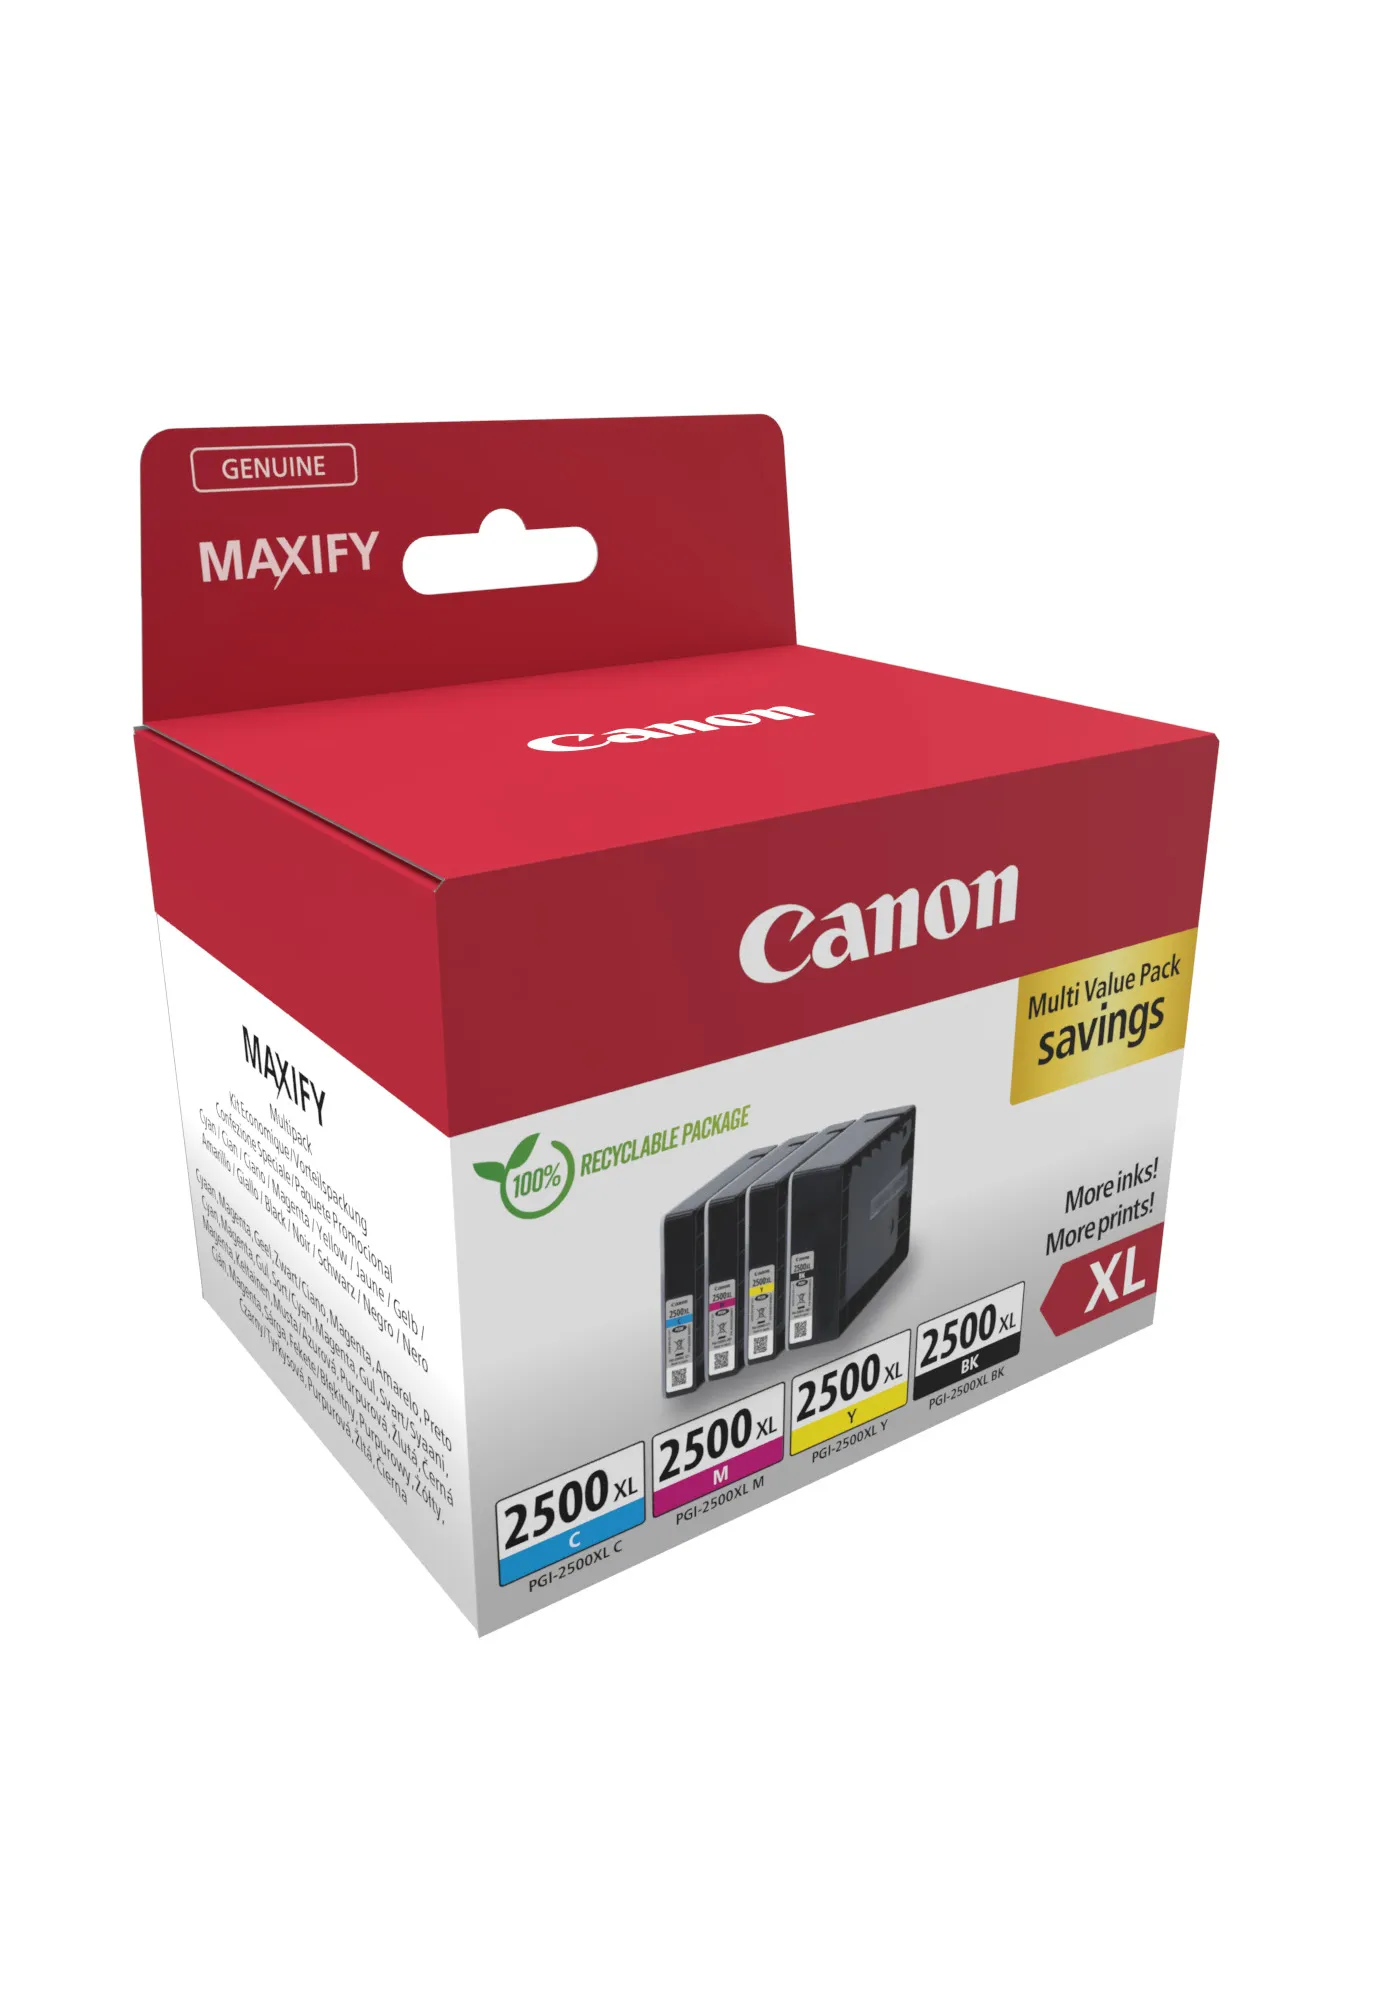 Vente CANON PGI-2500XL Ink Cartridge BK/C/M/Y MULTI Canon au meilleur prix - visuel 2